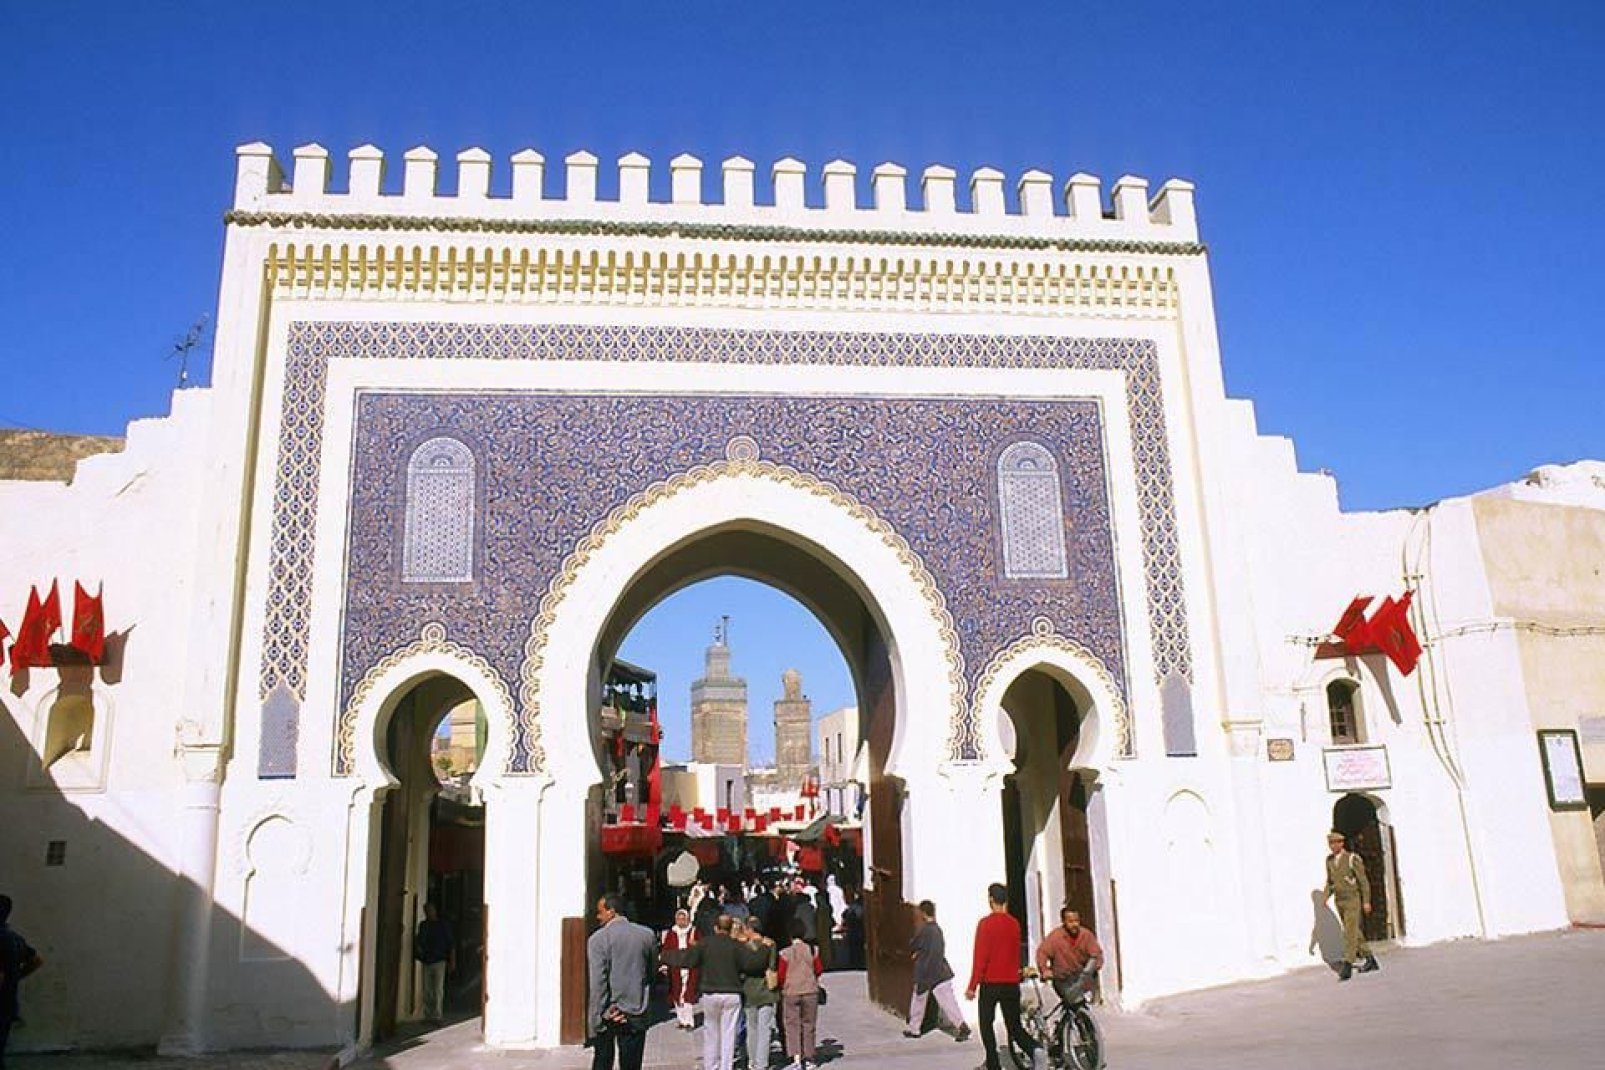 Fez es una ciudad imperial. Es el centro religioso de Marruecos, y tiene una arquitectura notable.